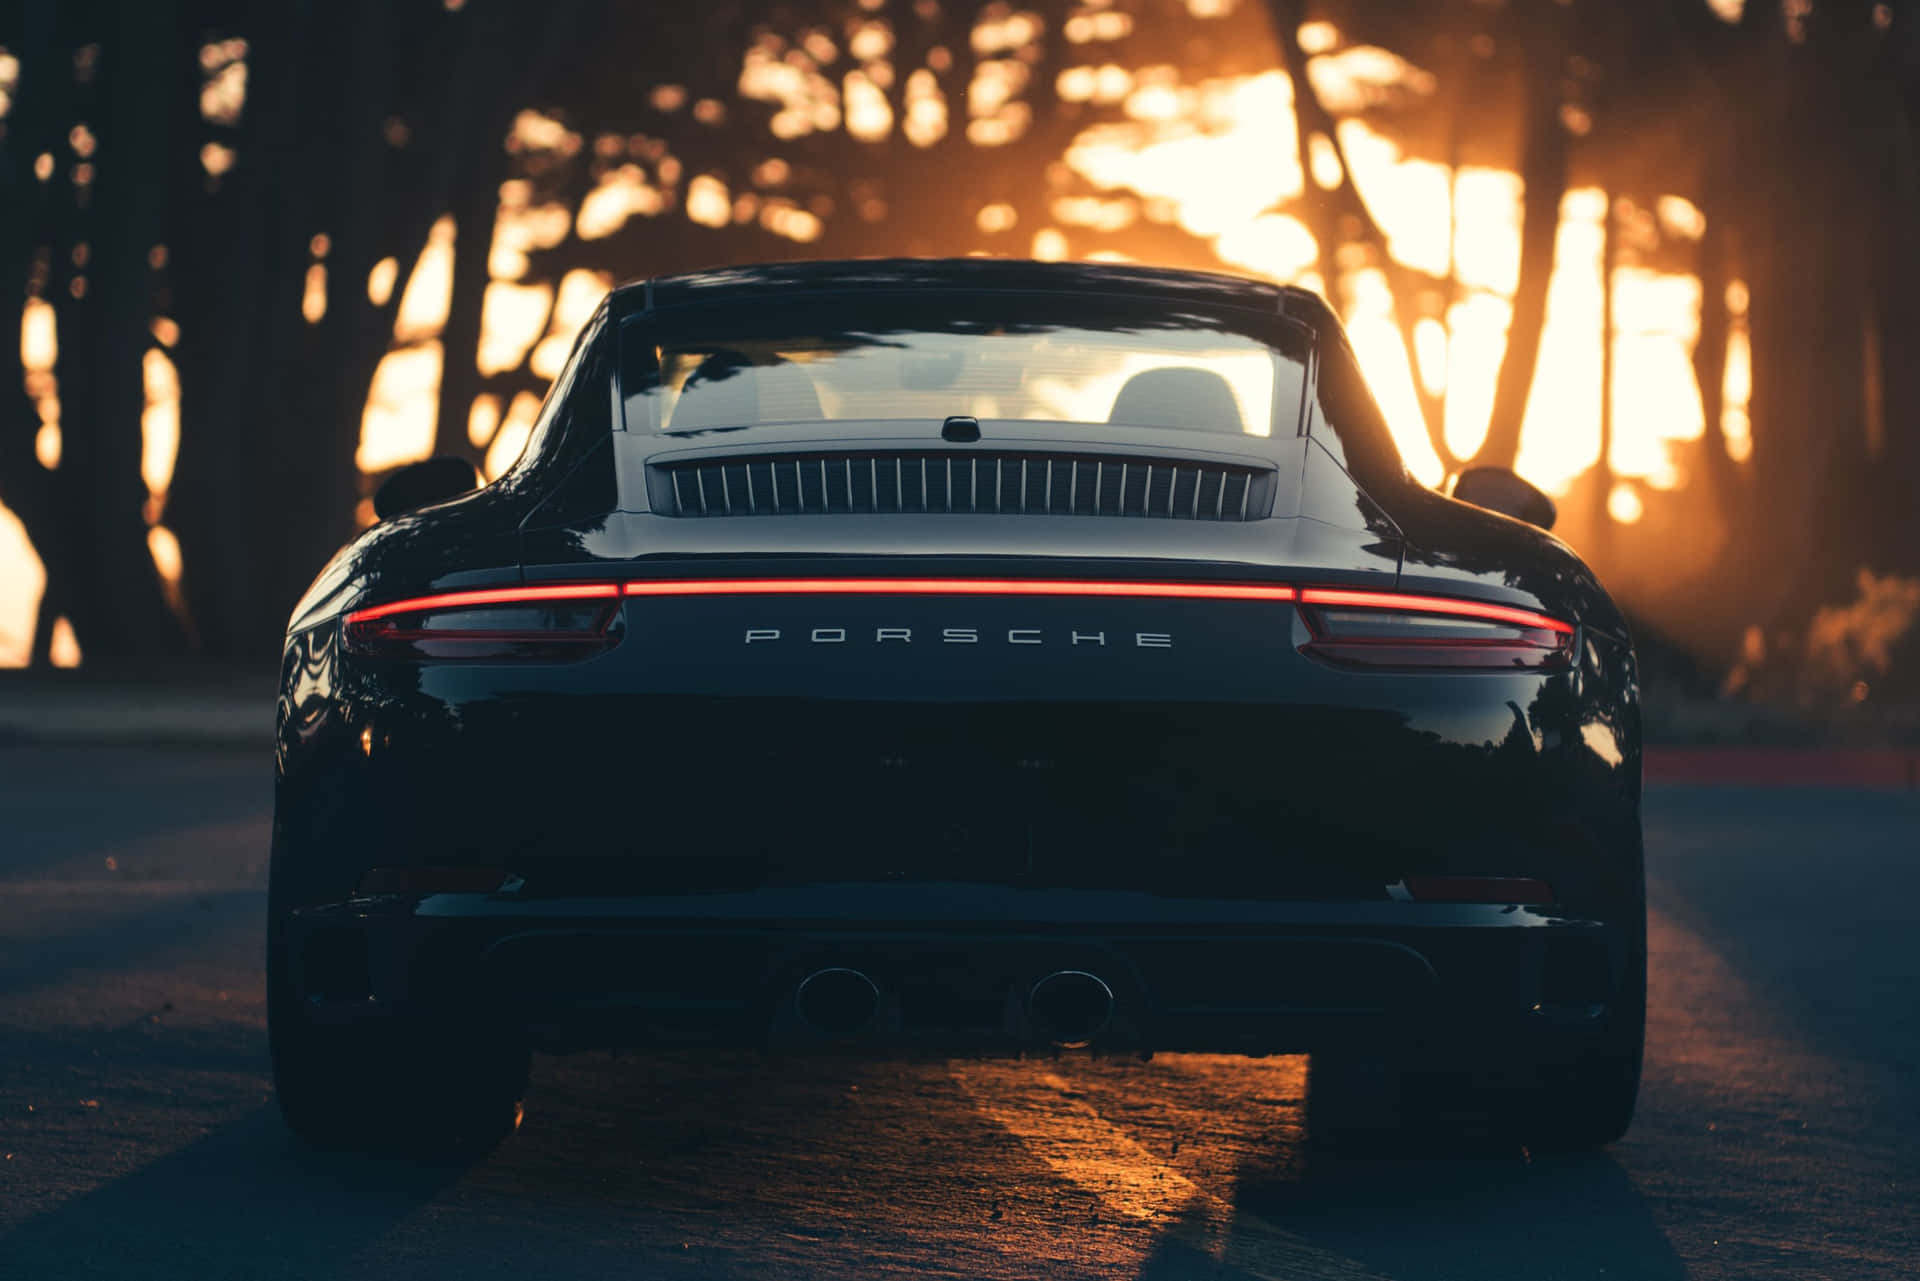 Porsche2997 X 2000 Hintergrund